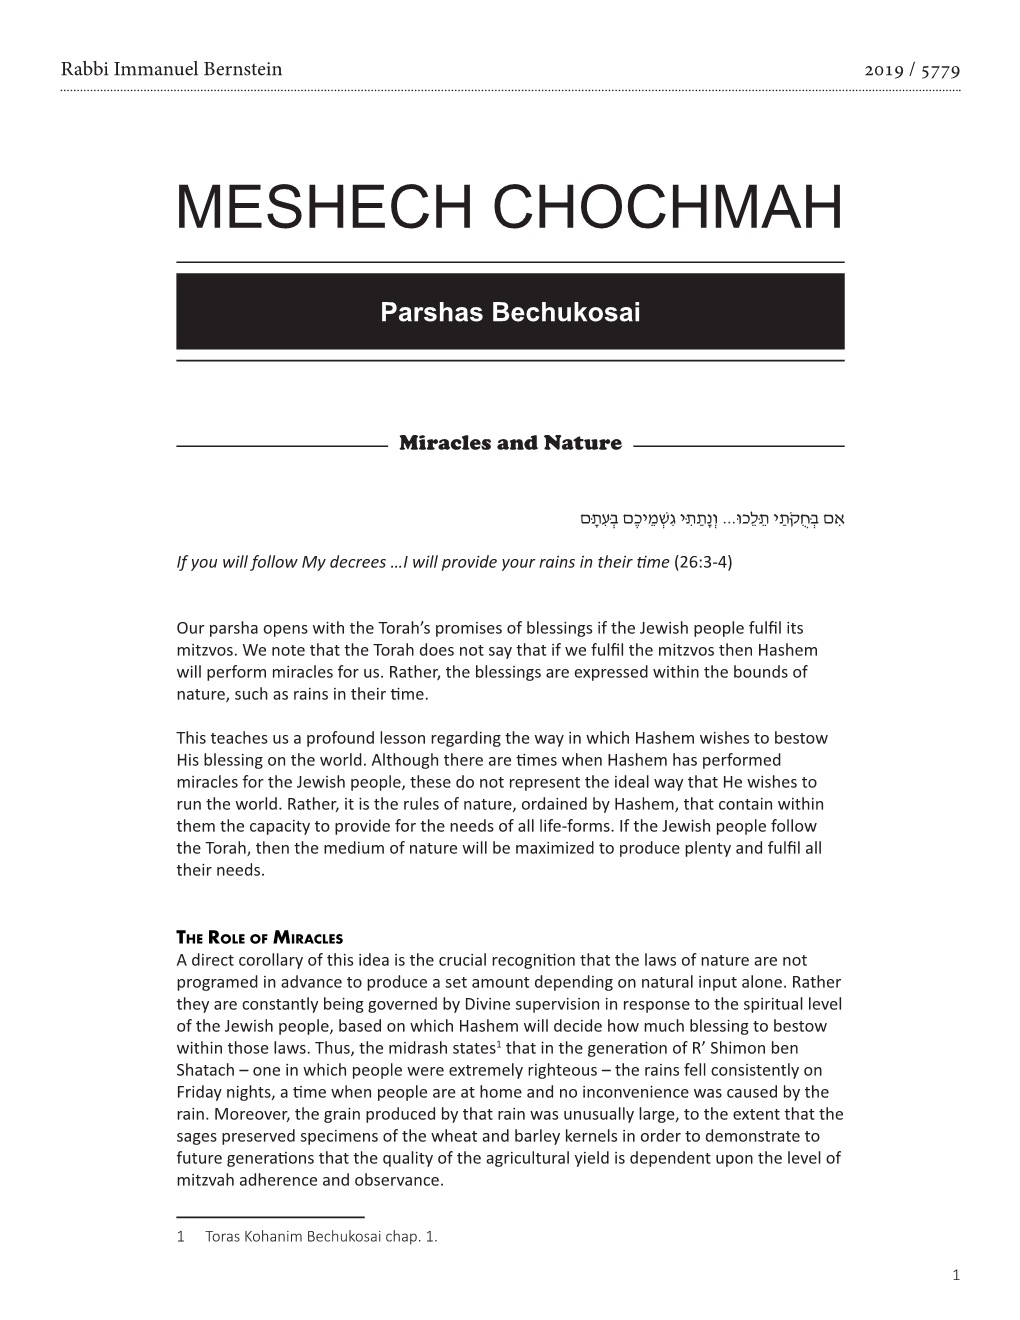 Meshech Chochmah